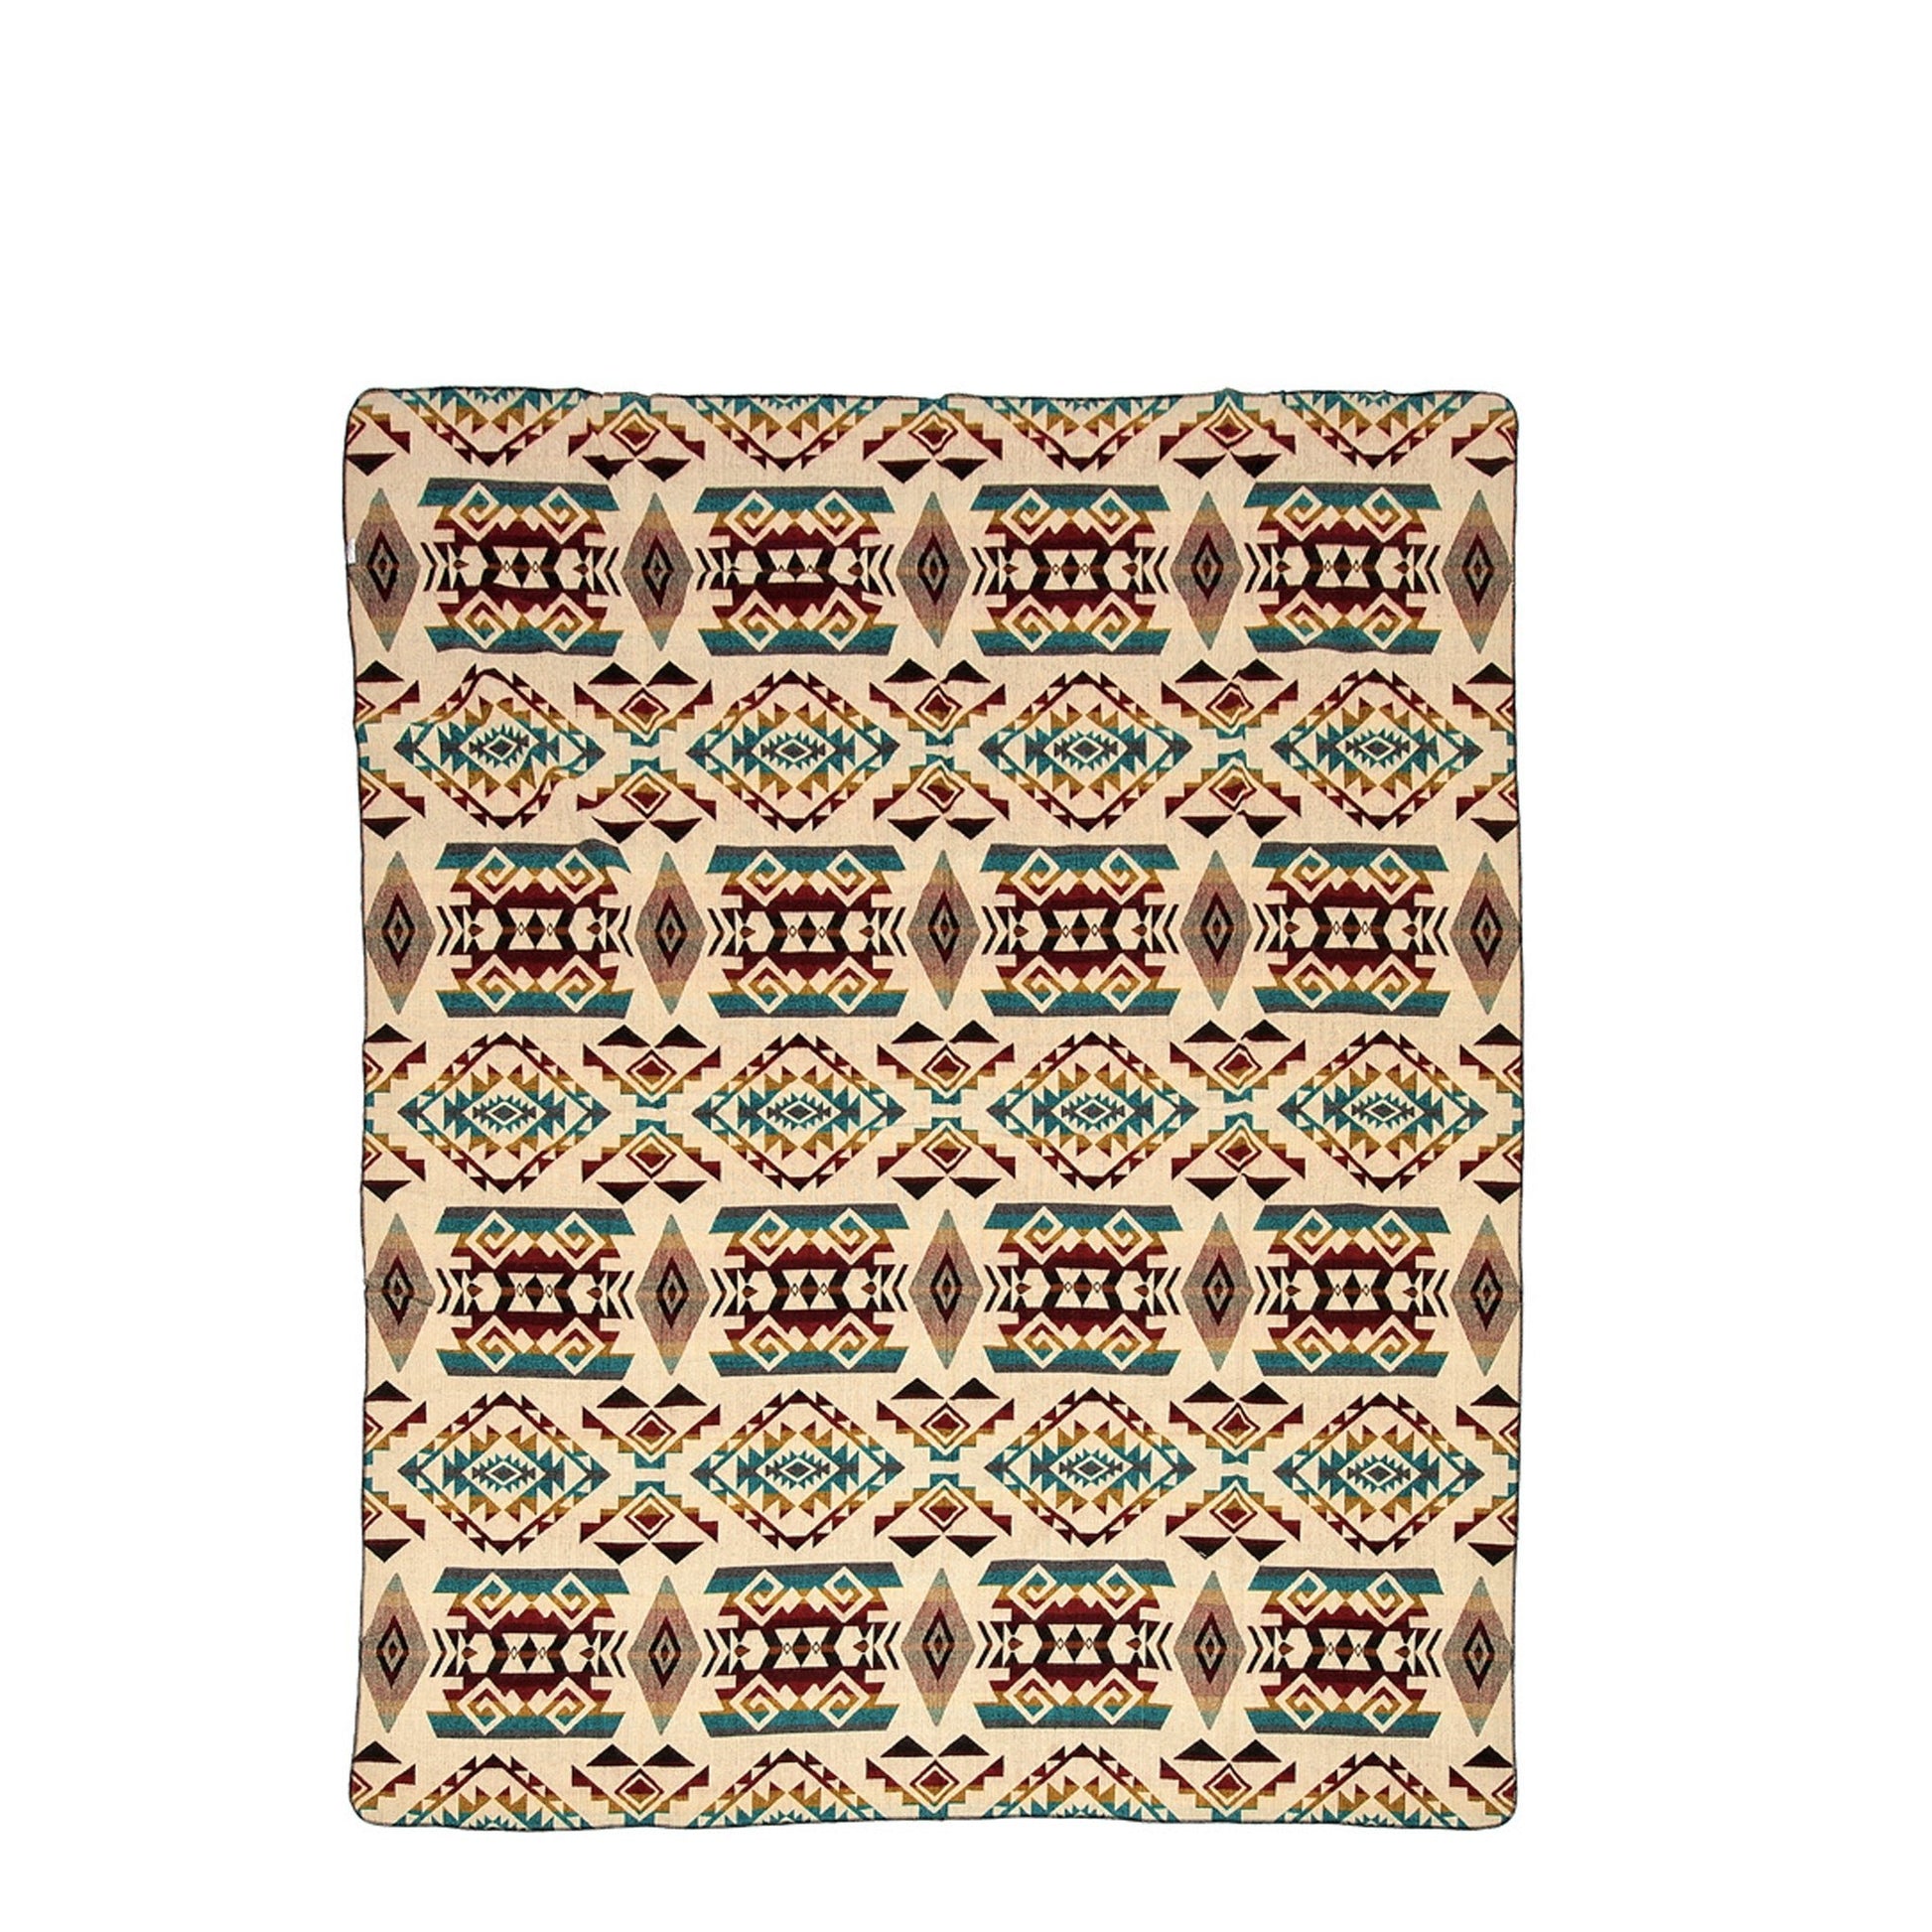 Authentische Chimborazo Decke aus bunter Alpaka Wolle - 110 x 205 cm - Vandeley